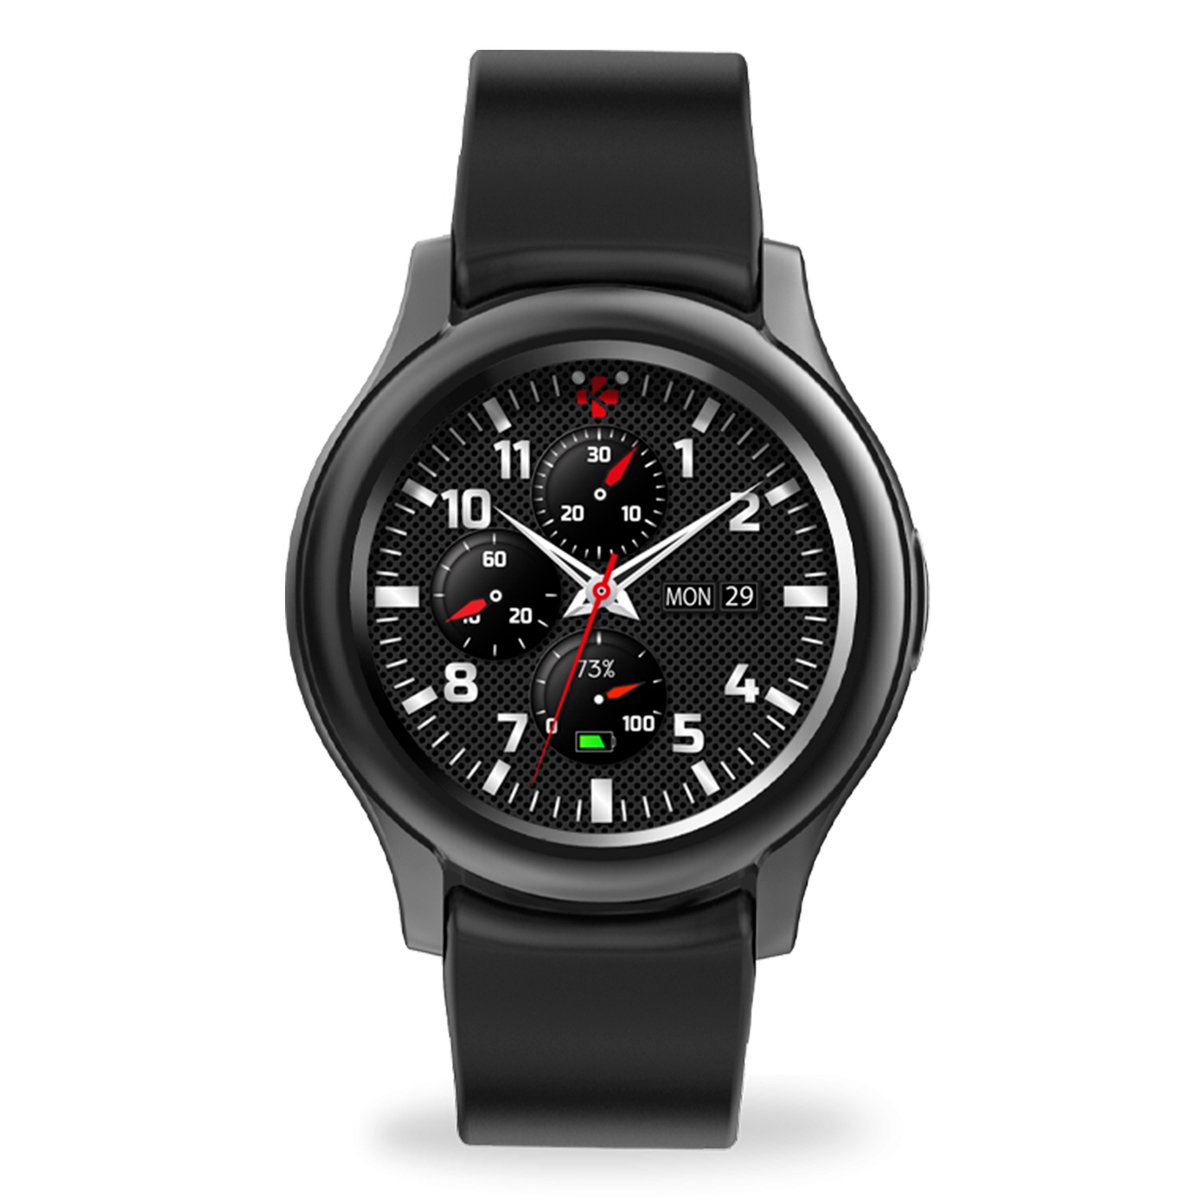 Mykronoz Smart Watch ZeRound3 Black Online at Best Price | Smart ...